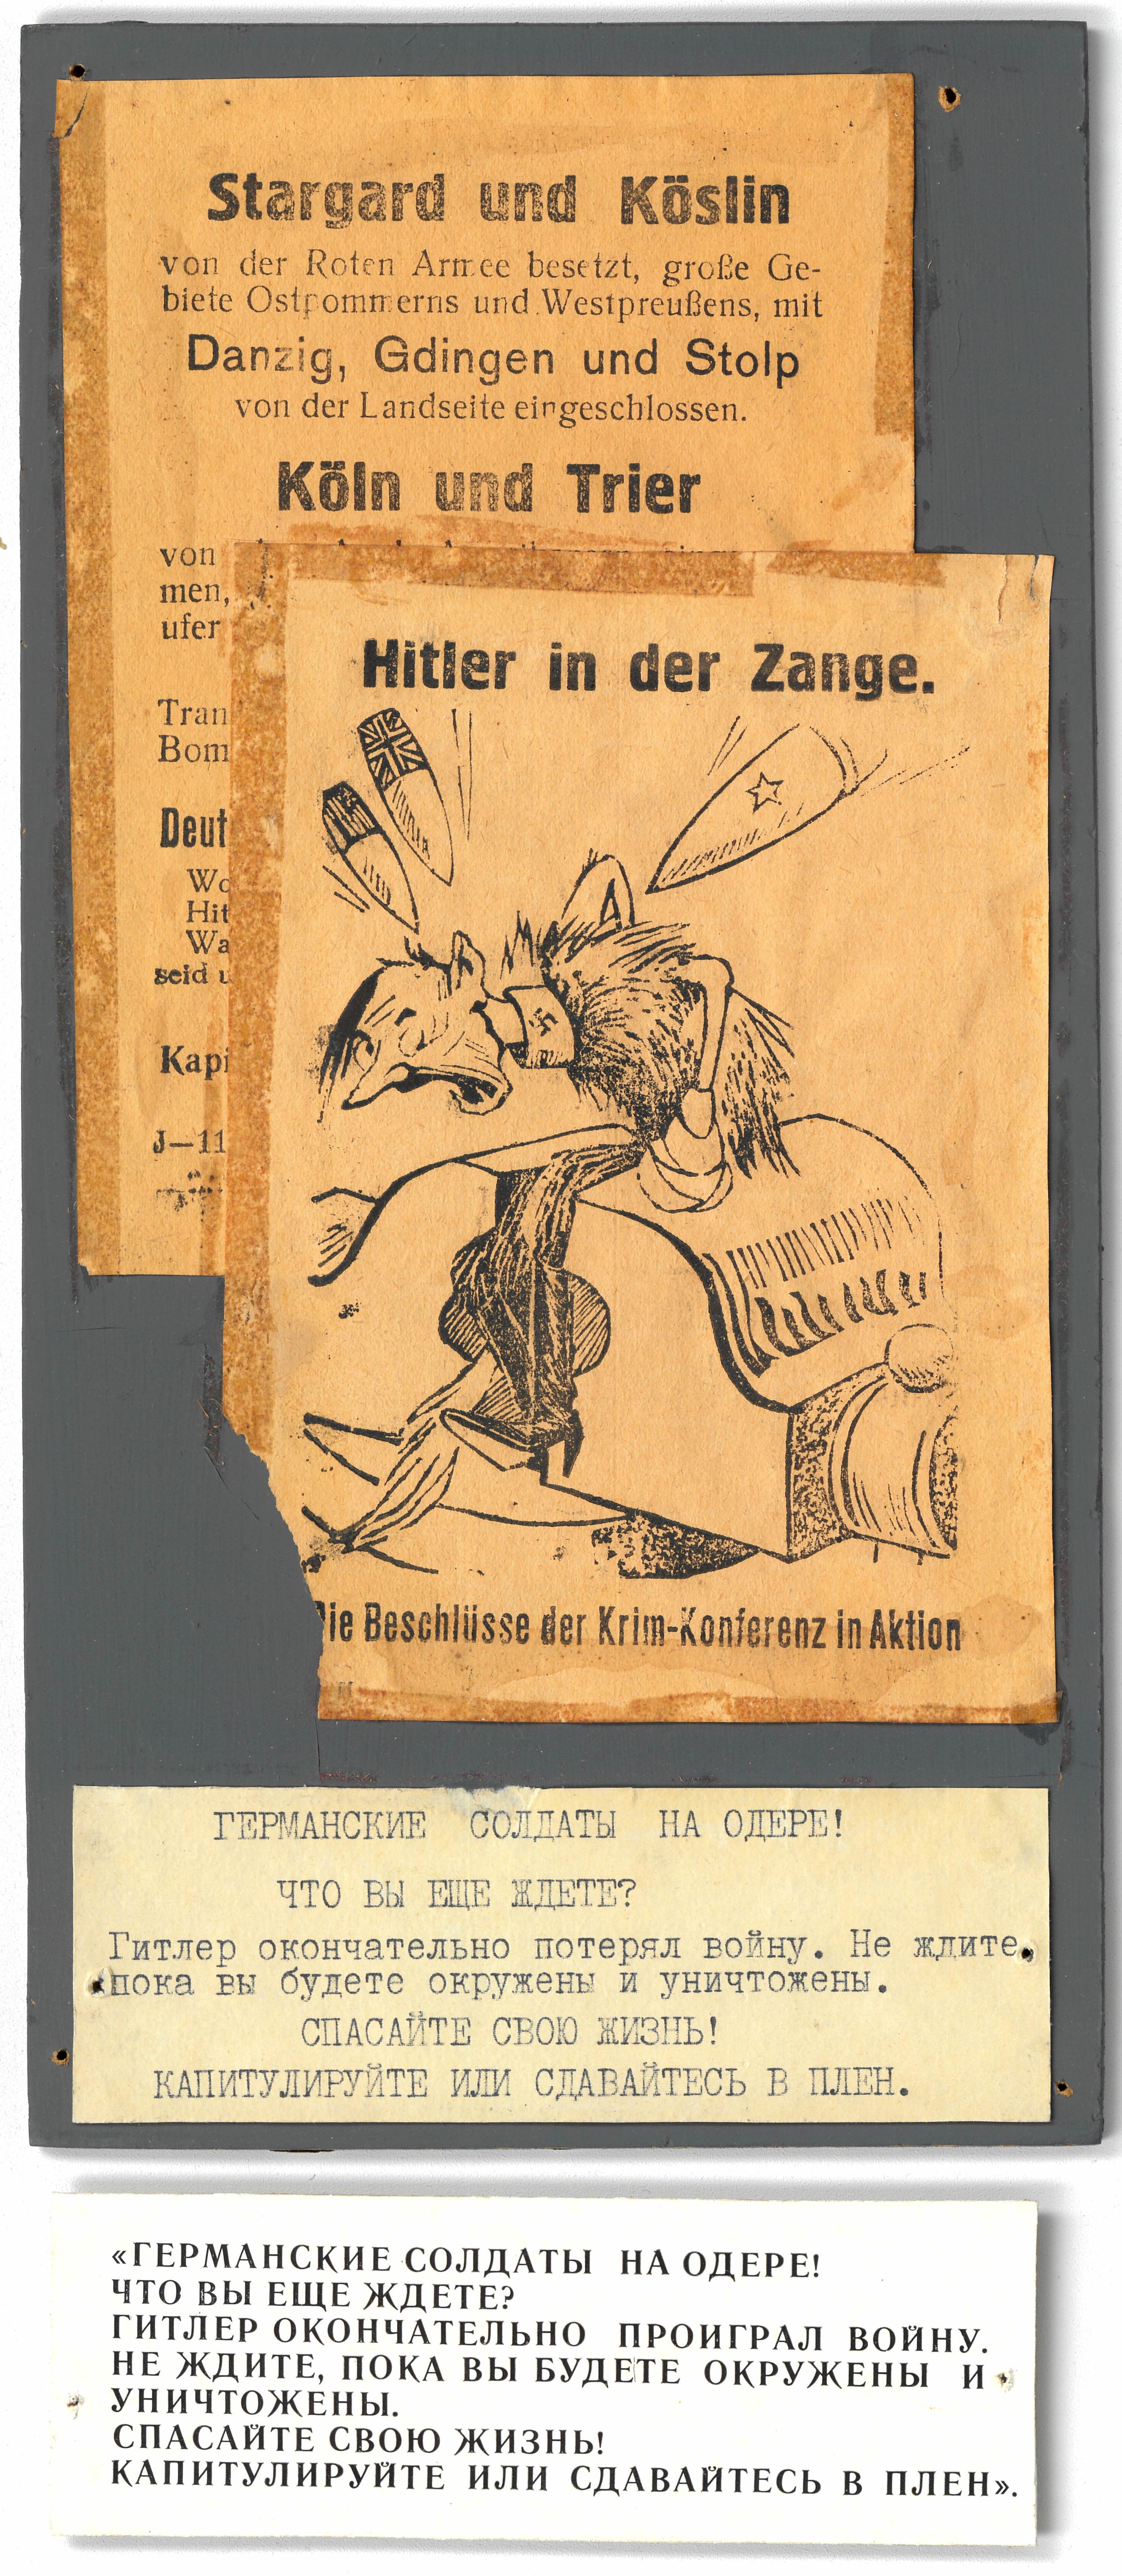 Sowjetisches Flugblatt: "Hitler in der Zange", 1945 (Museum Berlin-Karlshorst CC BY-NC-SA)